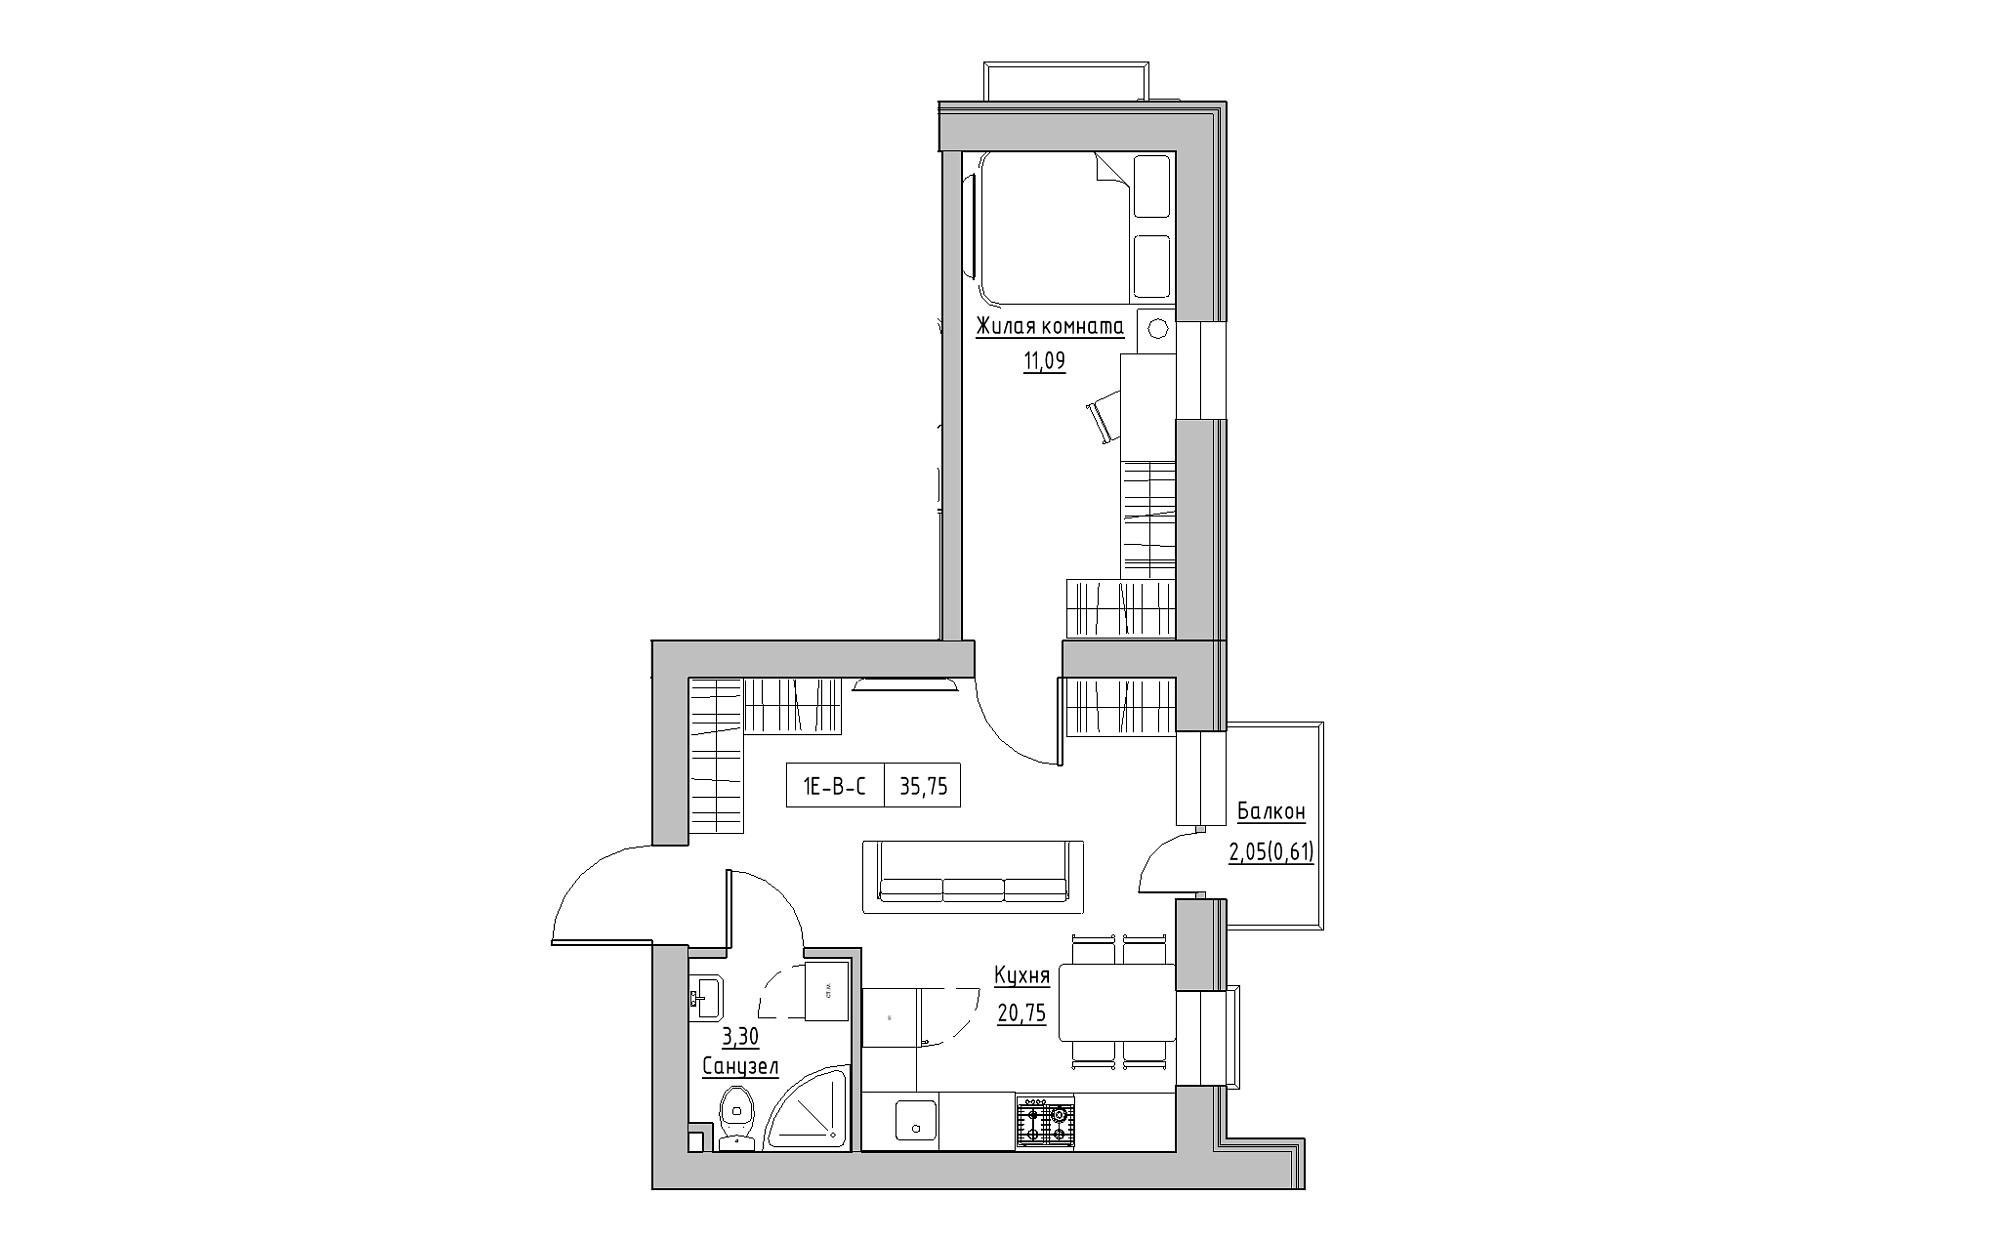 Планування 1-к квартира площею 35.75м2, KS-022-04/0009.